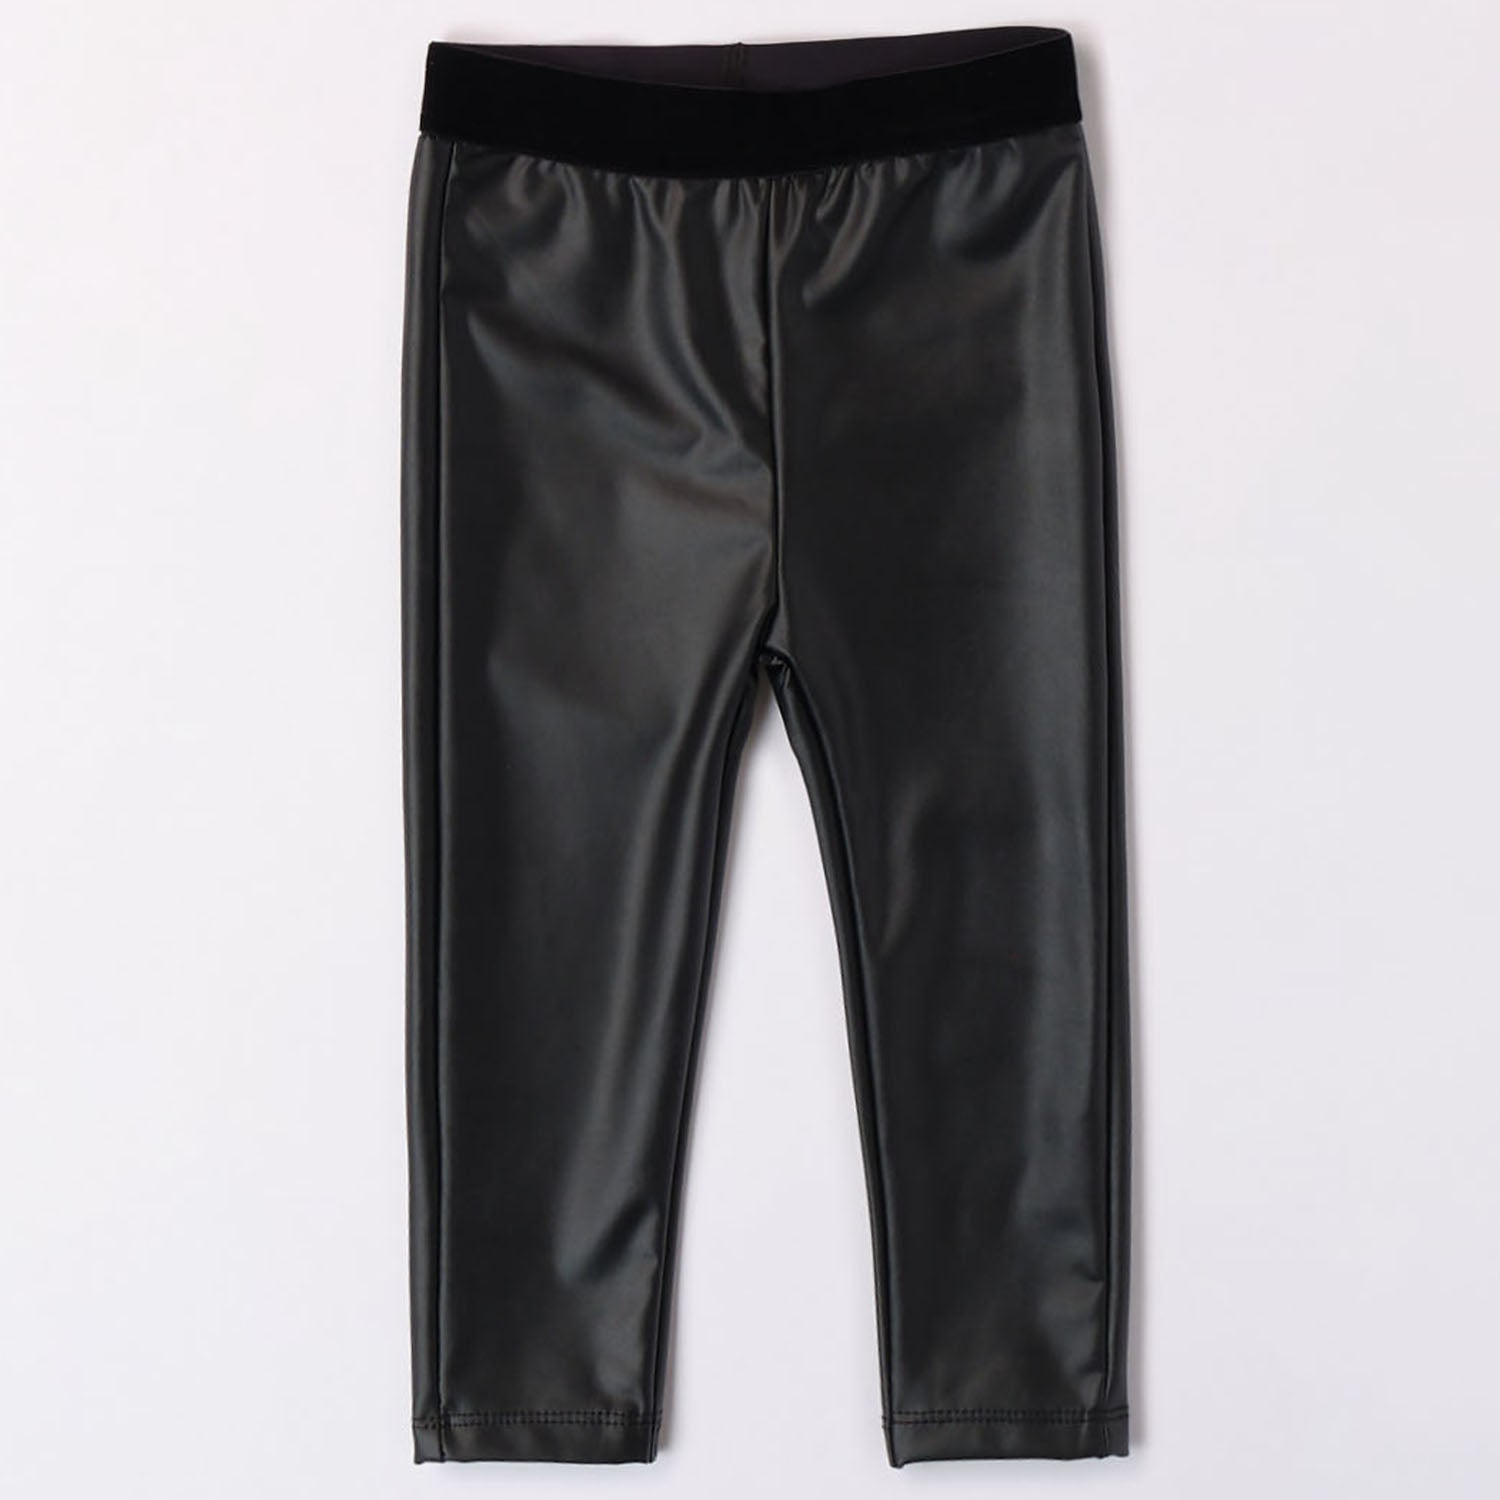 Black Leather-Look Leggings